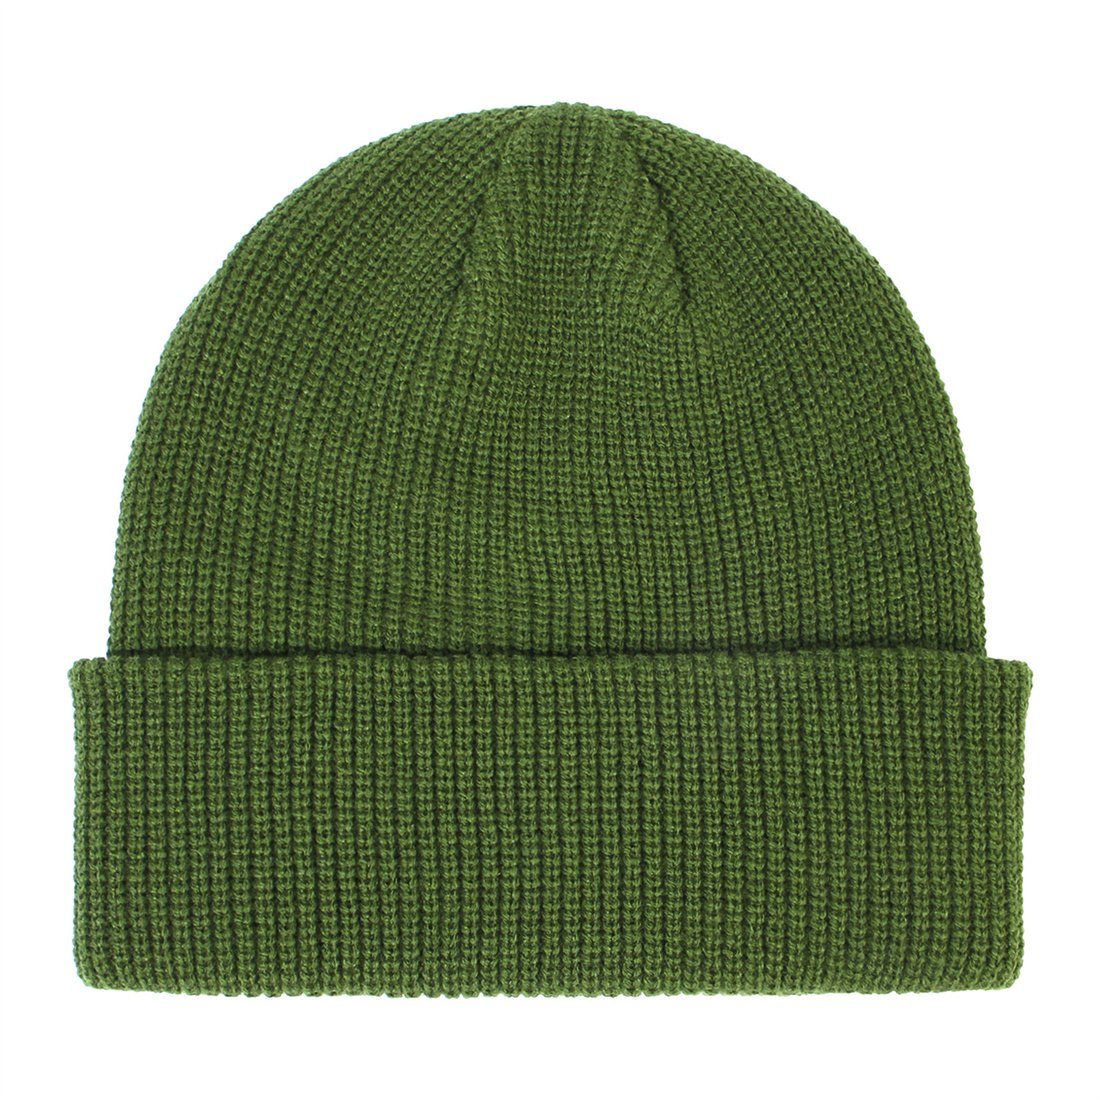 grün Mode Winter DÖRÖY einfarbig warme Unisex warme Wollmütze Strickmütze Strickmütze,